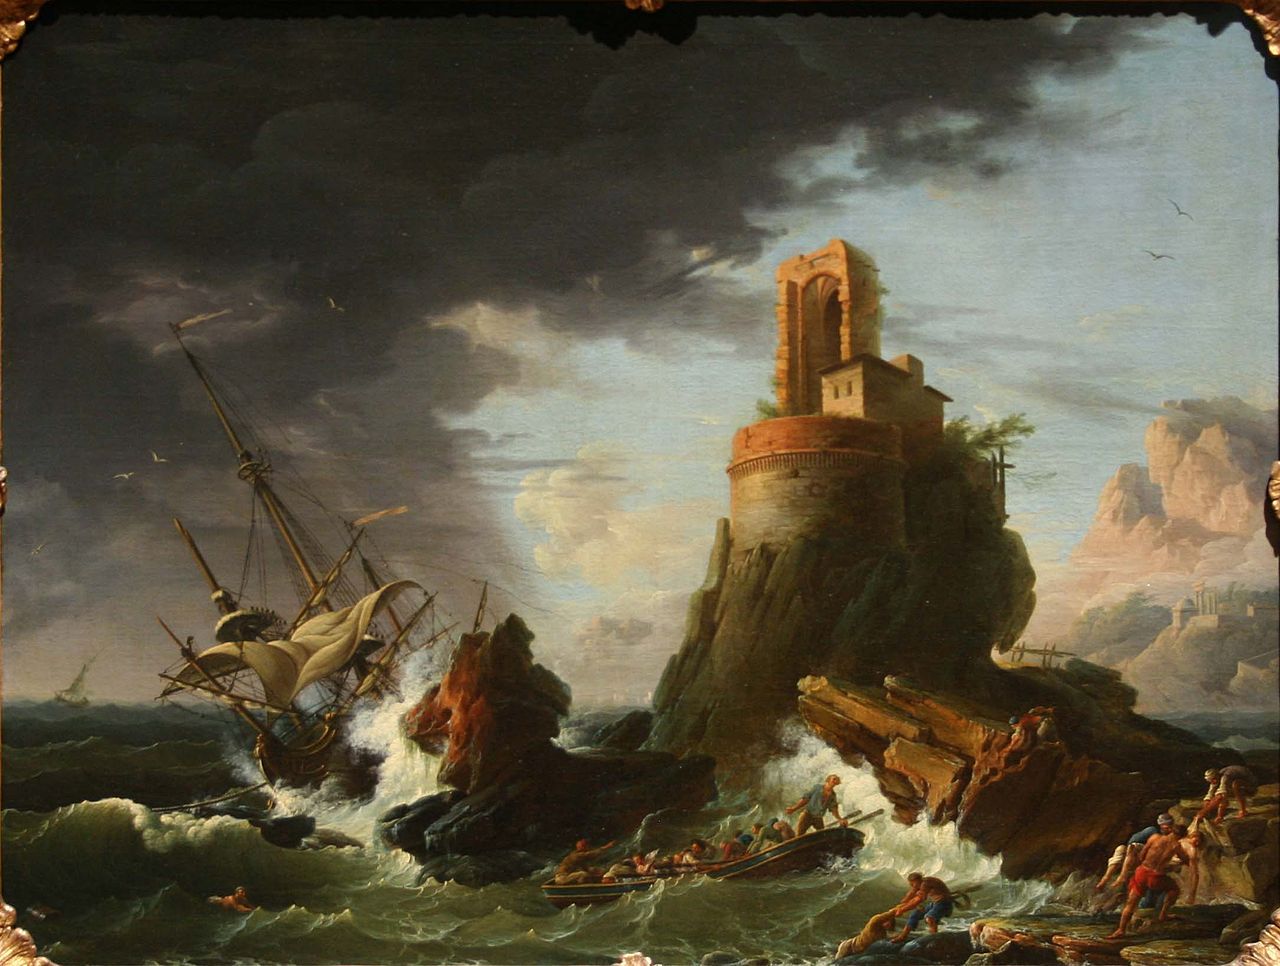 Henry d'Arles
Une tempête
1756